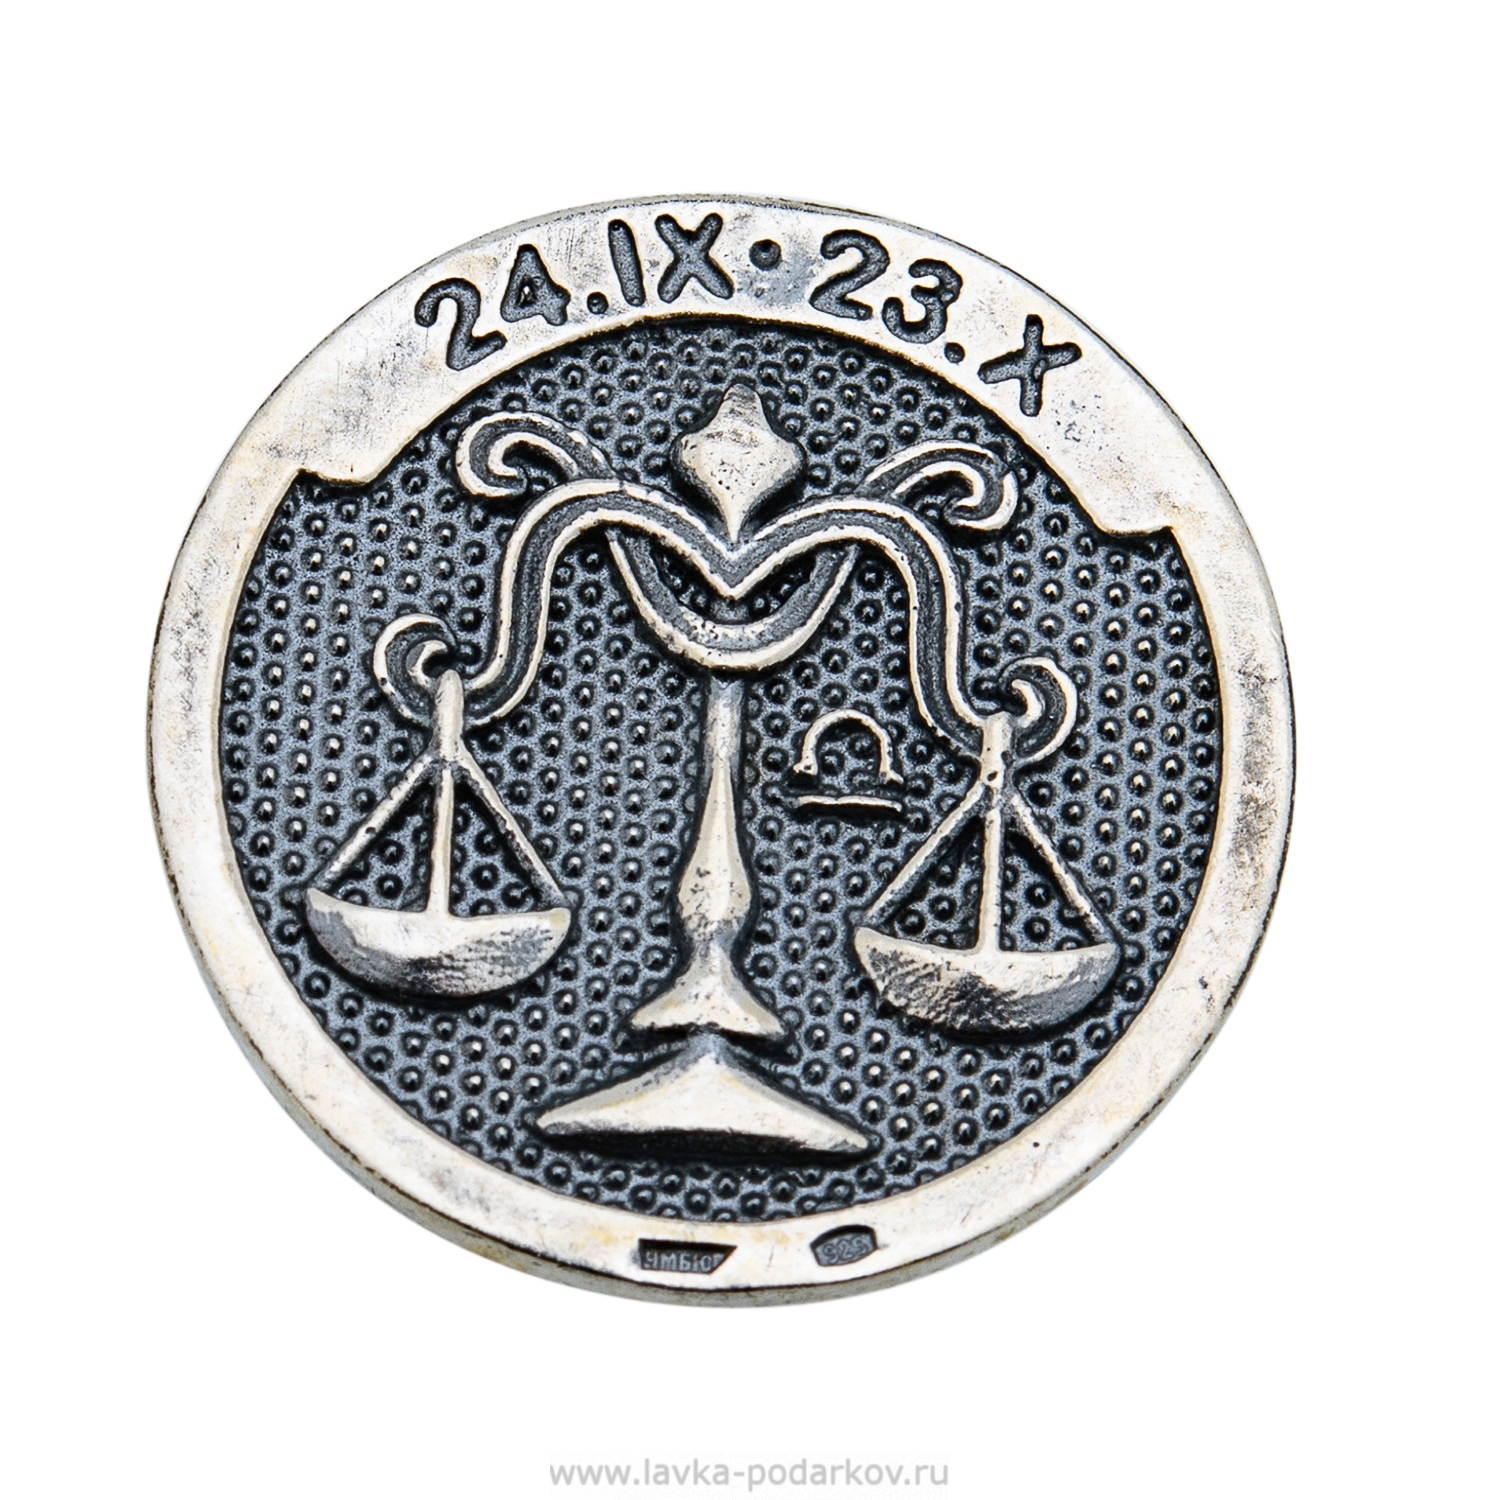 Звонкая монета. Сувенирные монеты со знаками зодиака. Сувениры с символом Газпрома. Сувенир символ школы. Серебряная монета знаки зодиака прямоугольная.